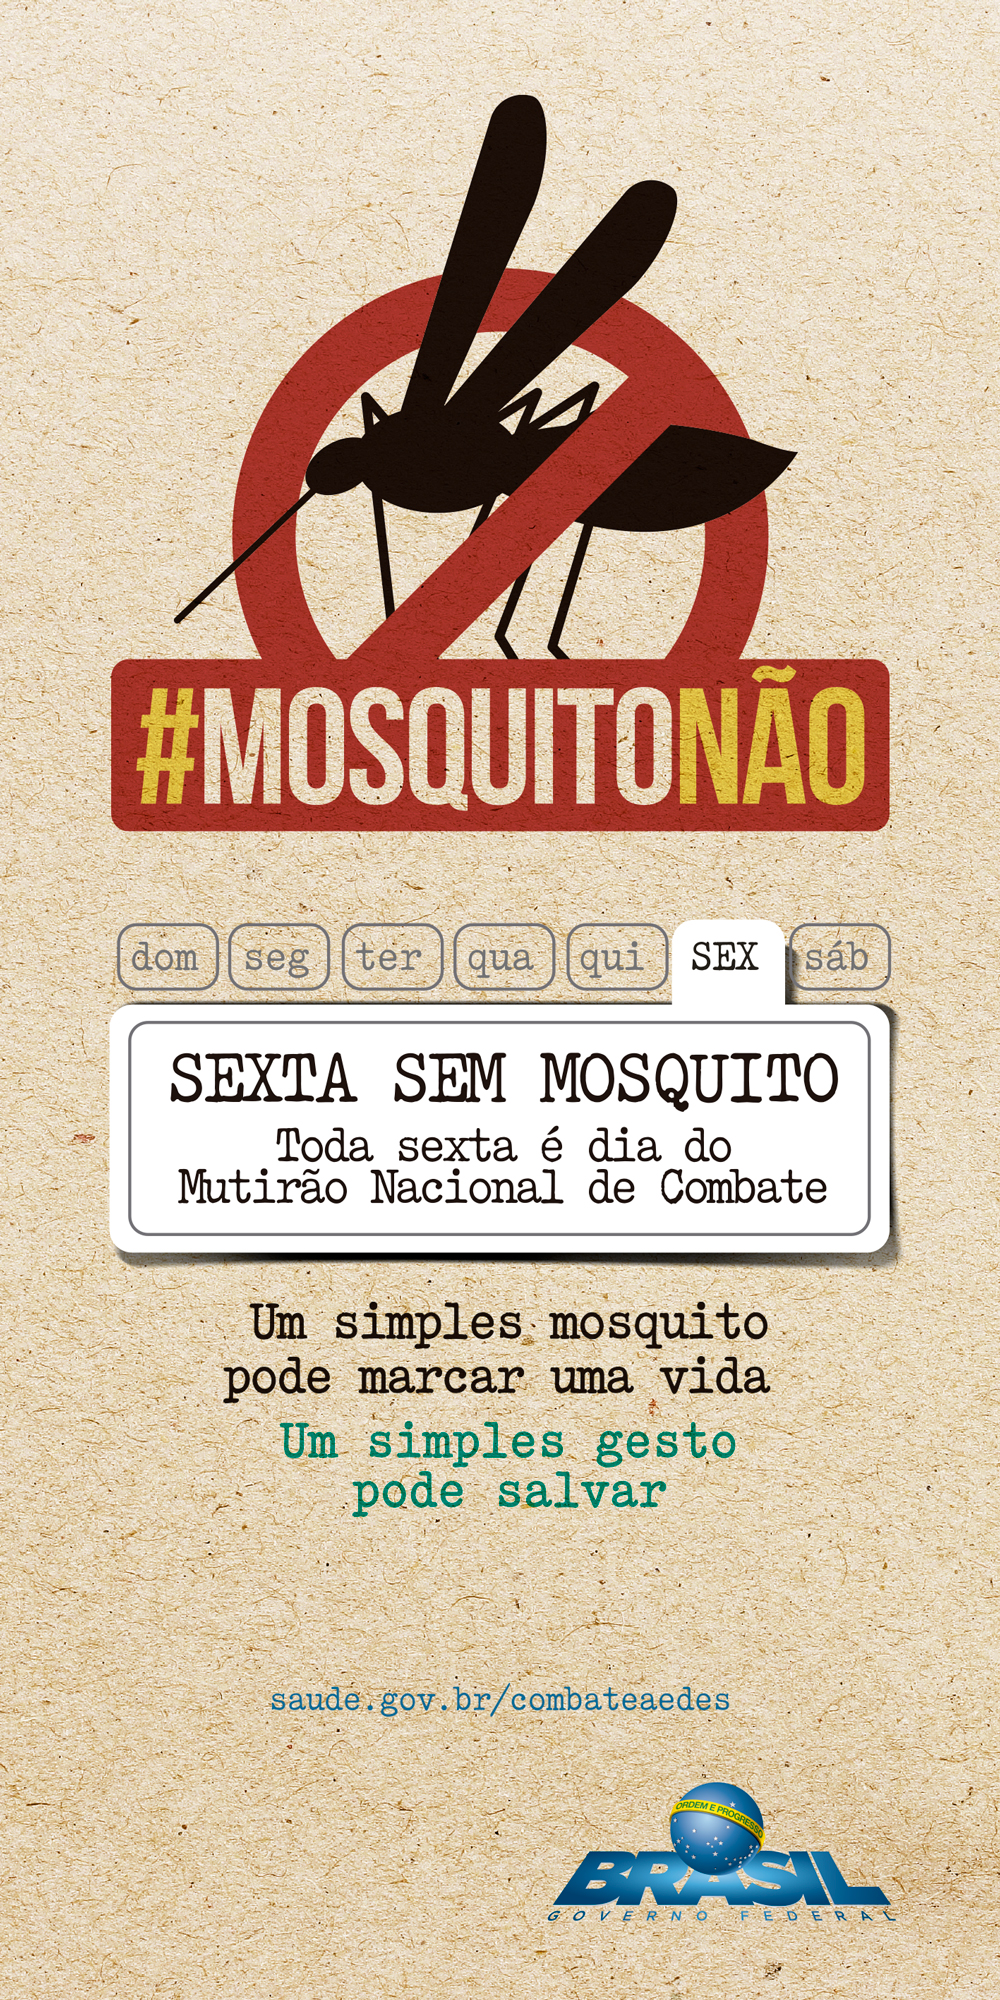 Sexta-Sem-Mosquito-BANNER-1x2